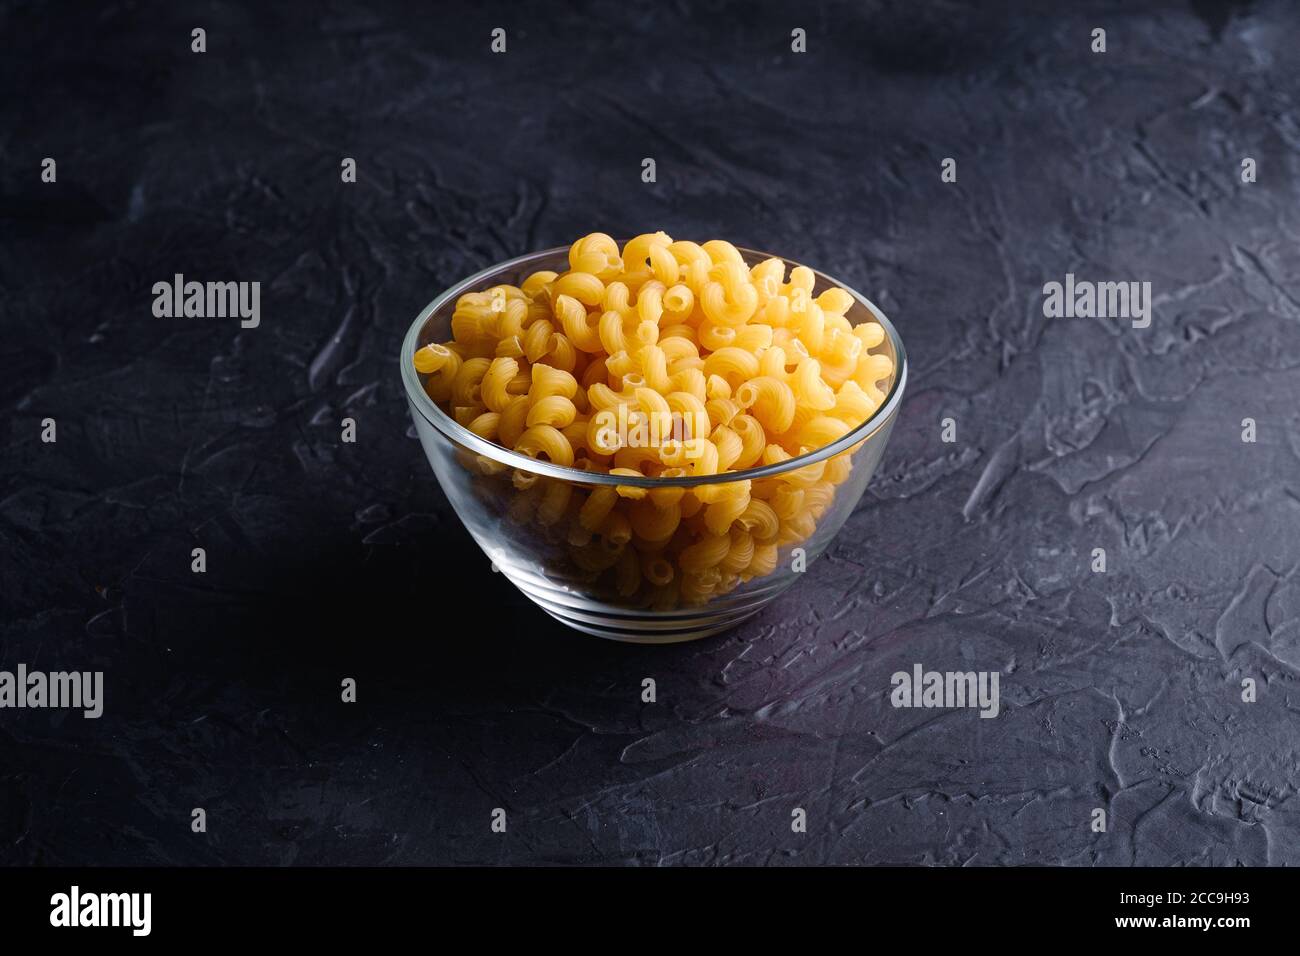 Ciotola in vetro con cavatappi pasta riccia di grano dorato crudo su fondo nero scuro testurizzato, vista angolare Foto Stock